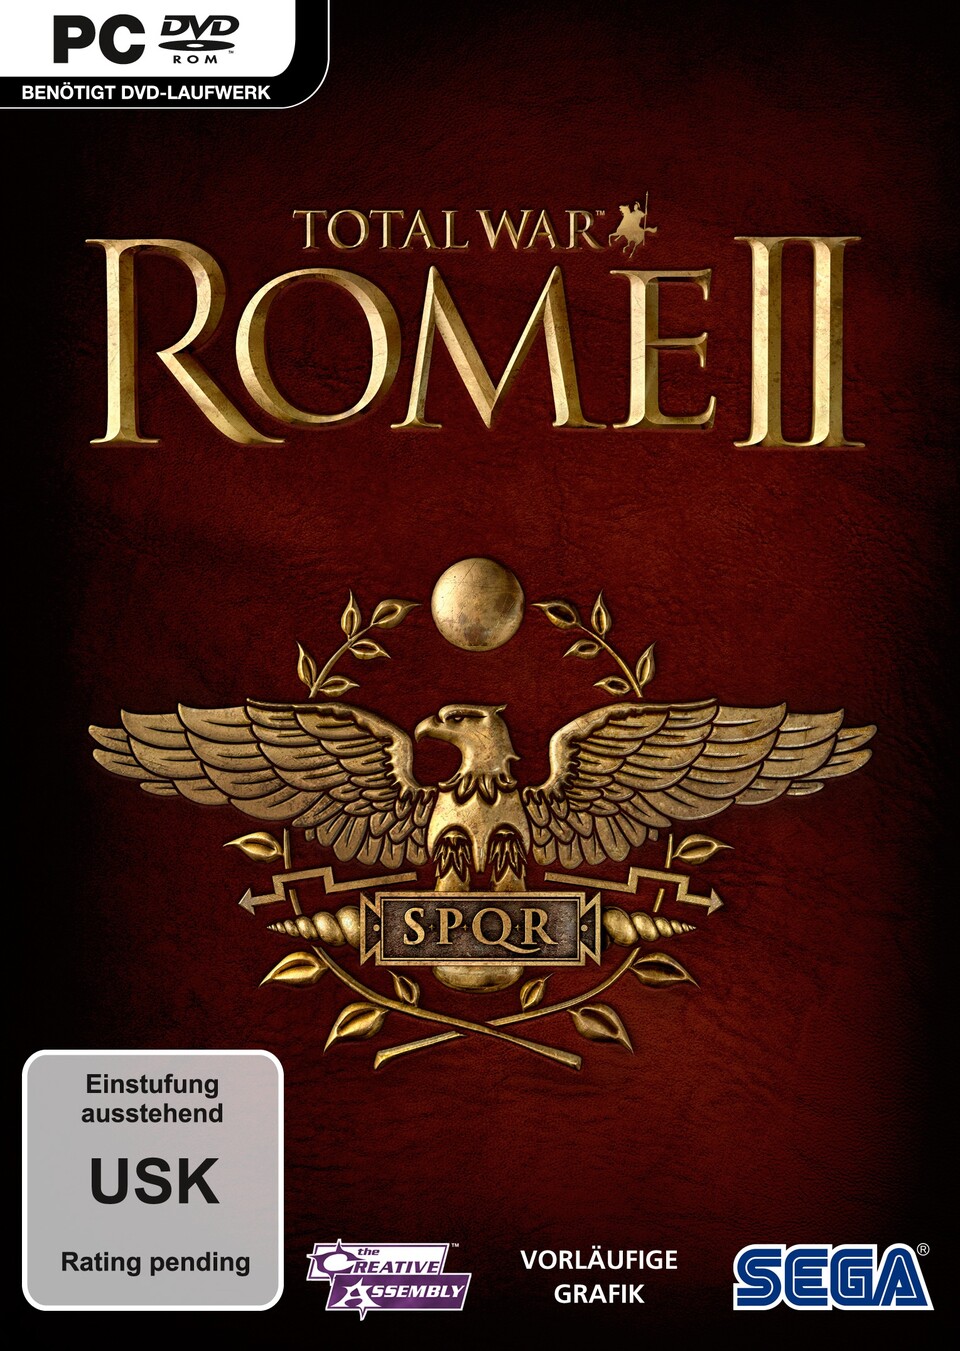 Das vorläufige Cover von Rome 2.